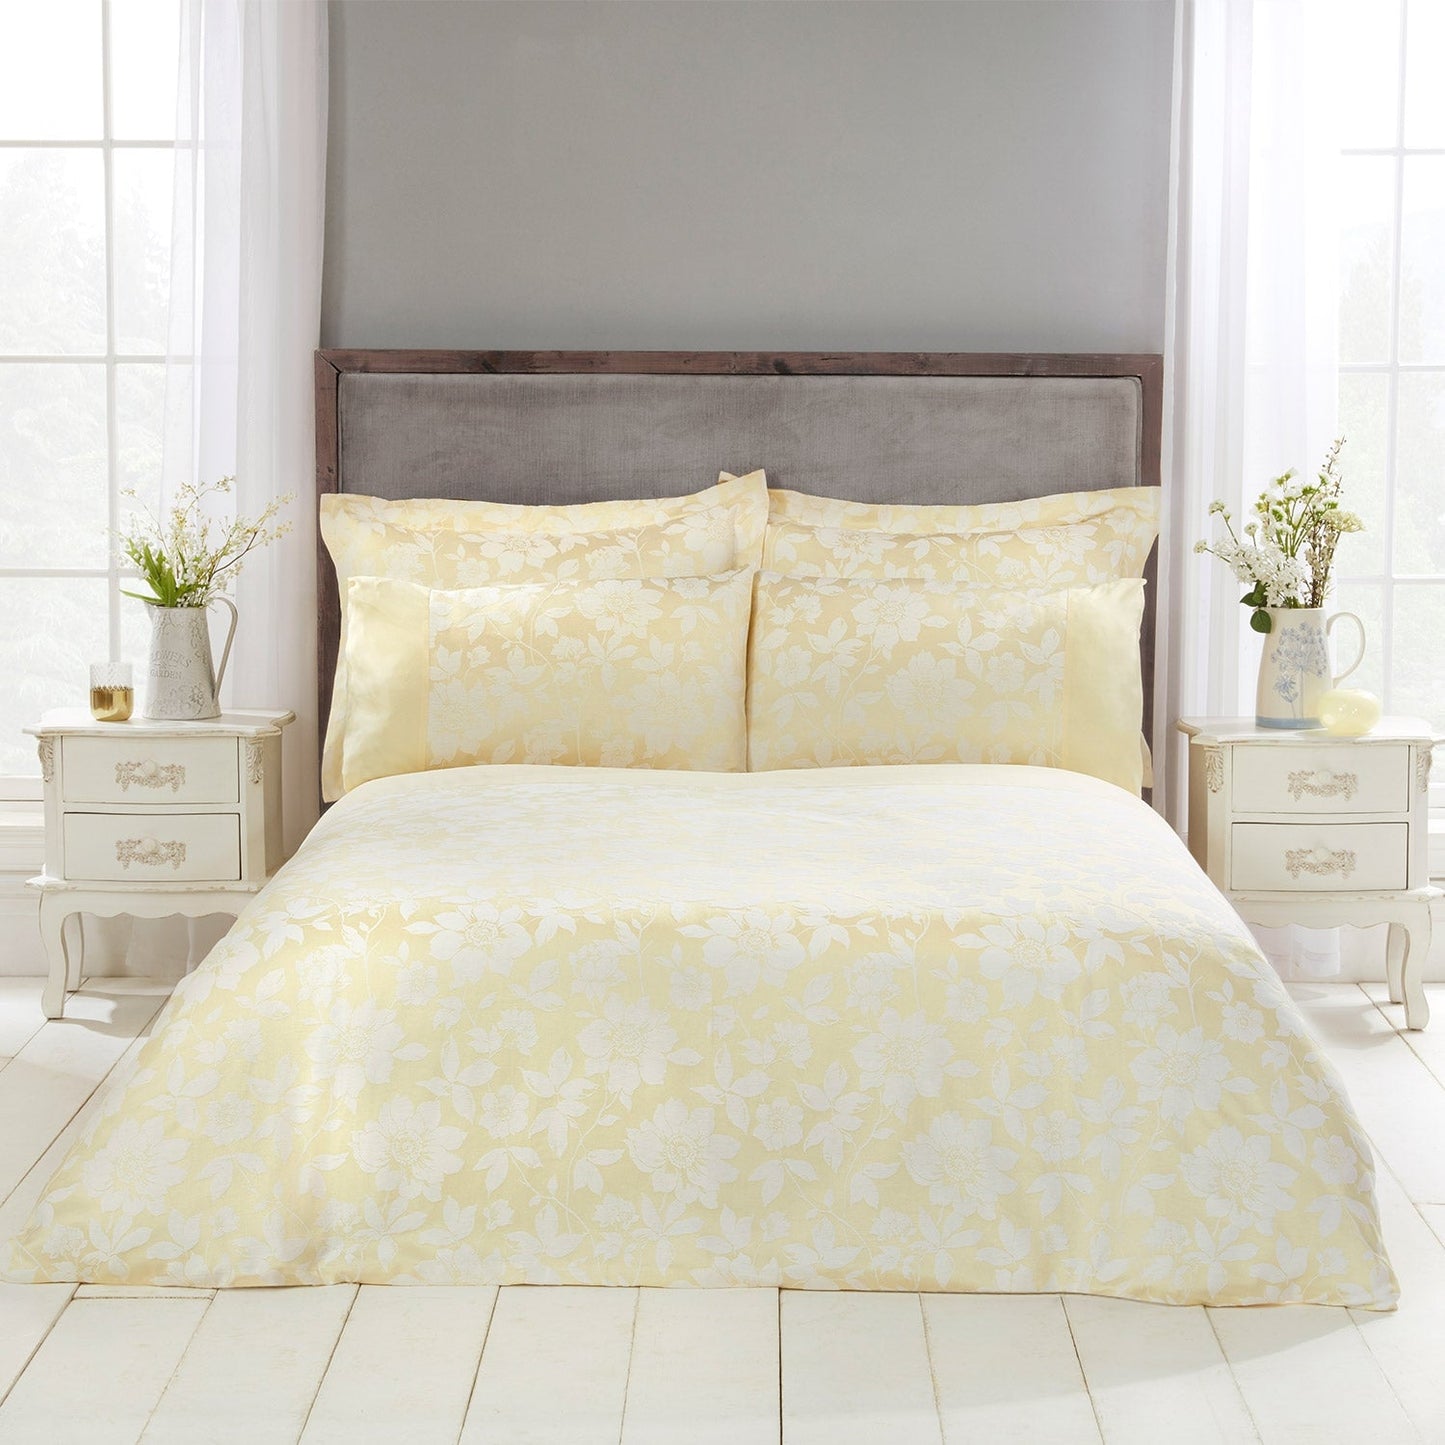 Lottie Lemon Luxury Cotton Rich Jacquard Duvet Cover